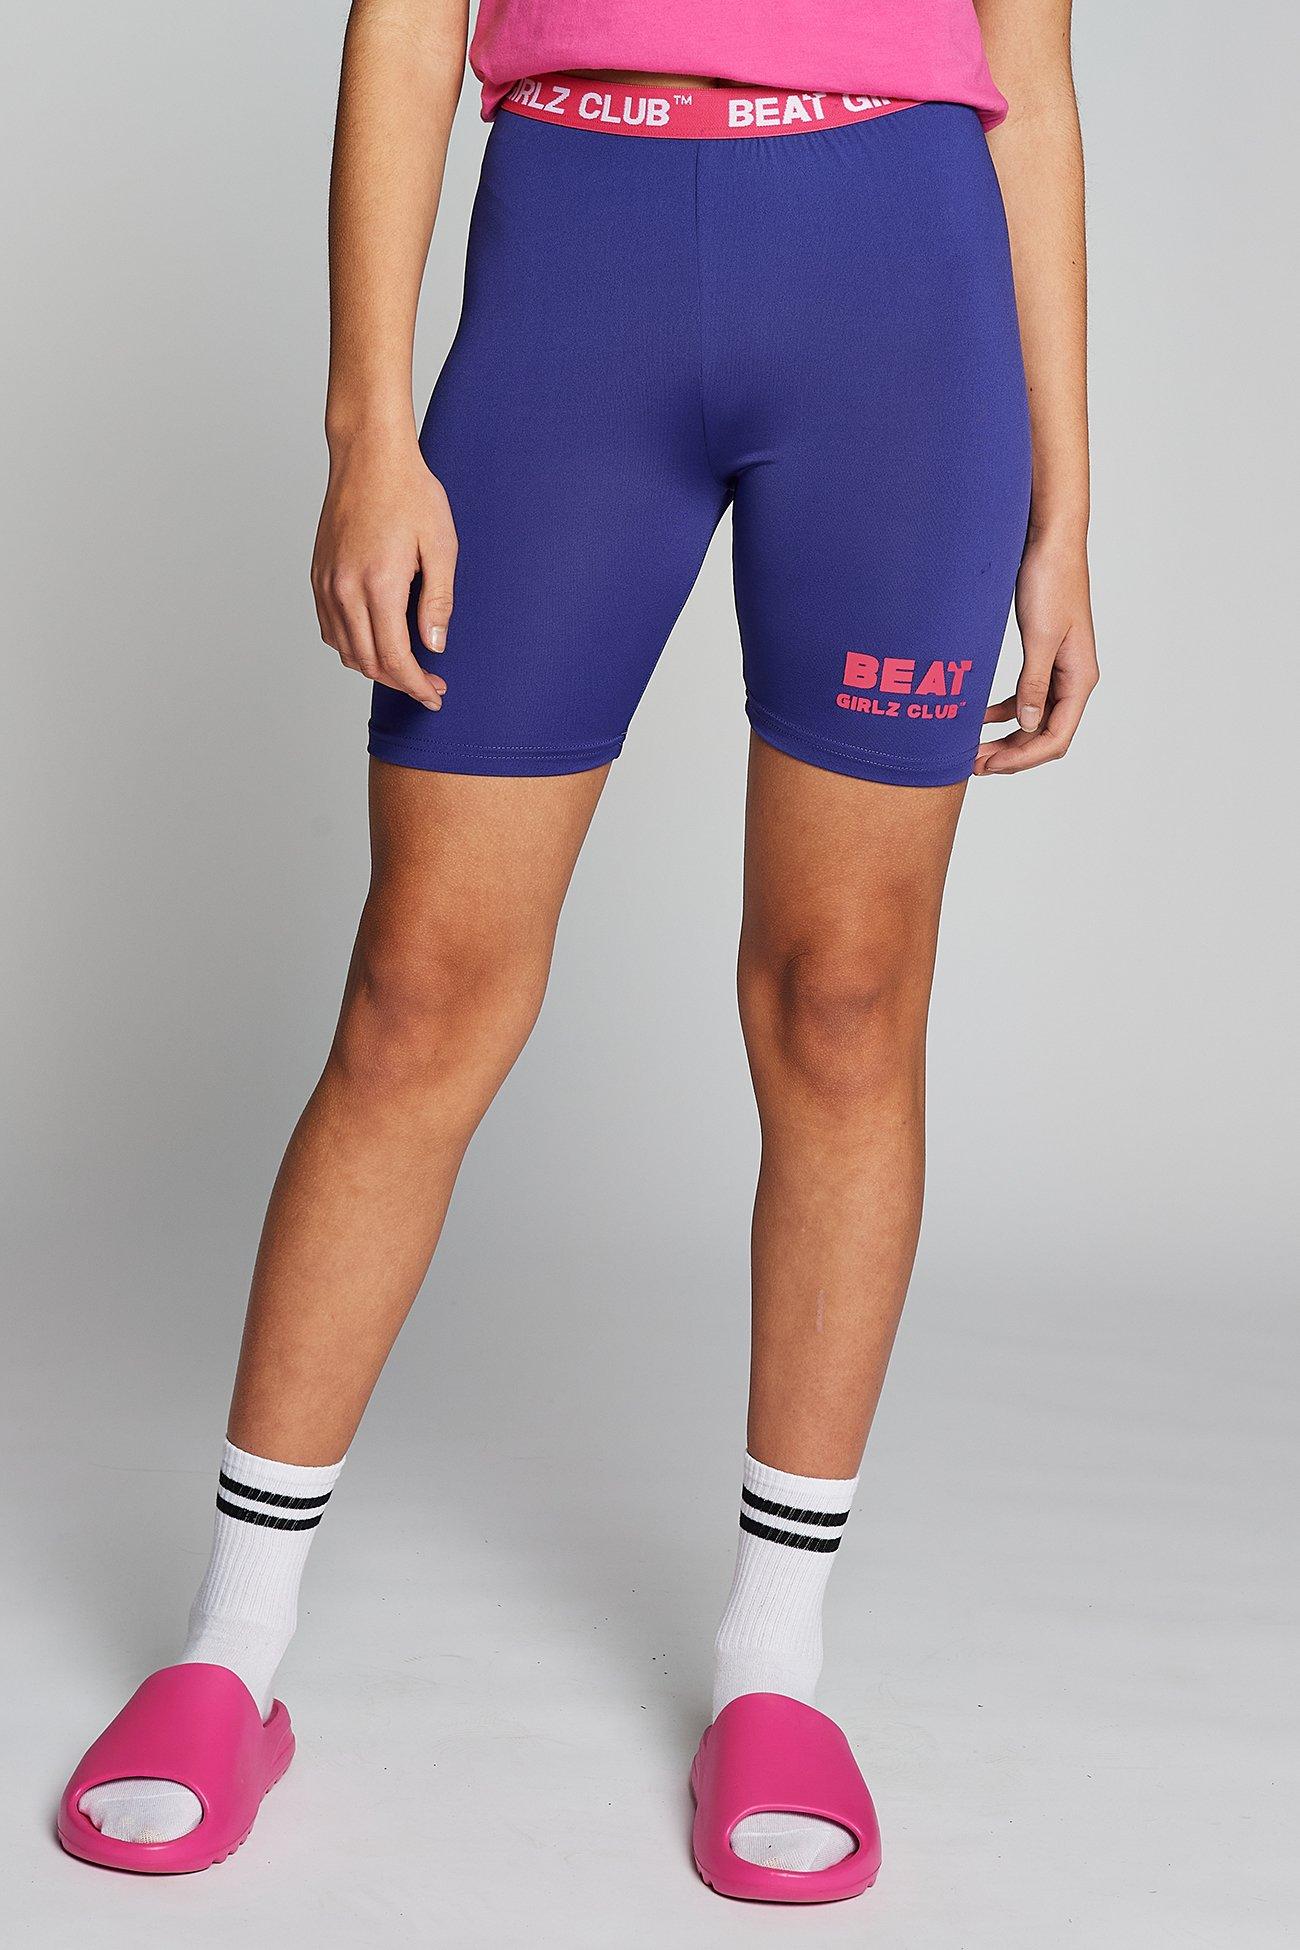 Велошорты с флип-шортами Beat Girlz Club, фиолетовый